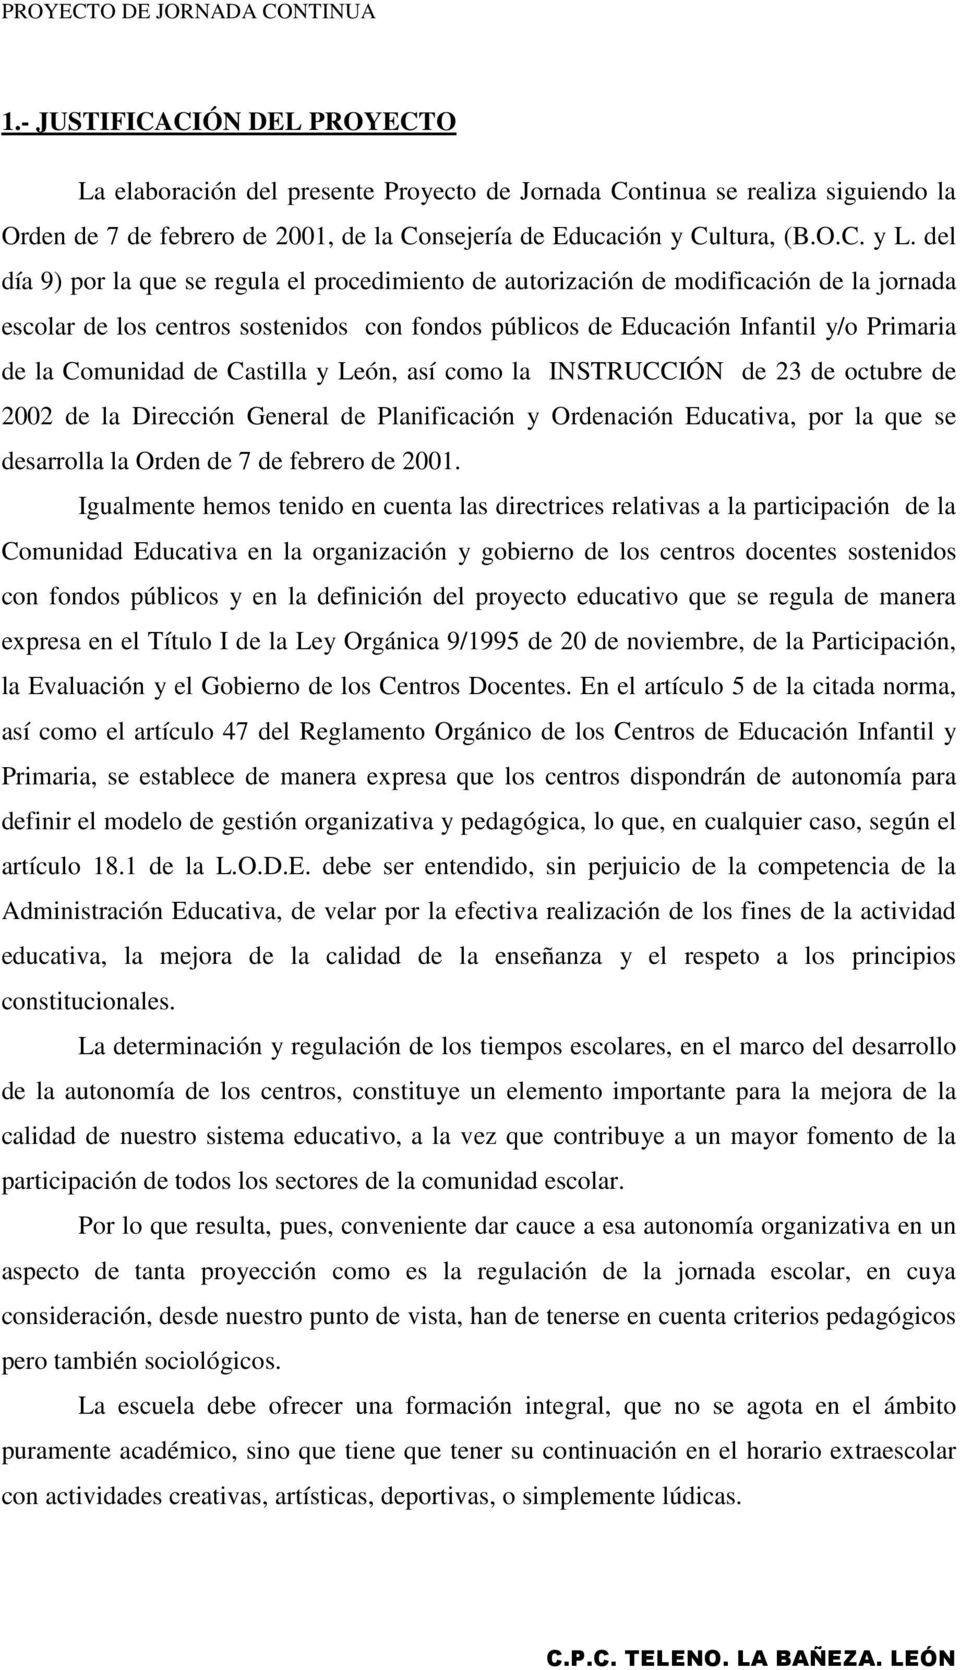 de Castilla y León, así como la INSTRUCCIÓN de 23 de octubre de 2002 de la Dirección General de Planificación y Ordenación Educativa, por la que se desarrolla la Orden de 7 de febrero de 2001.